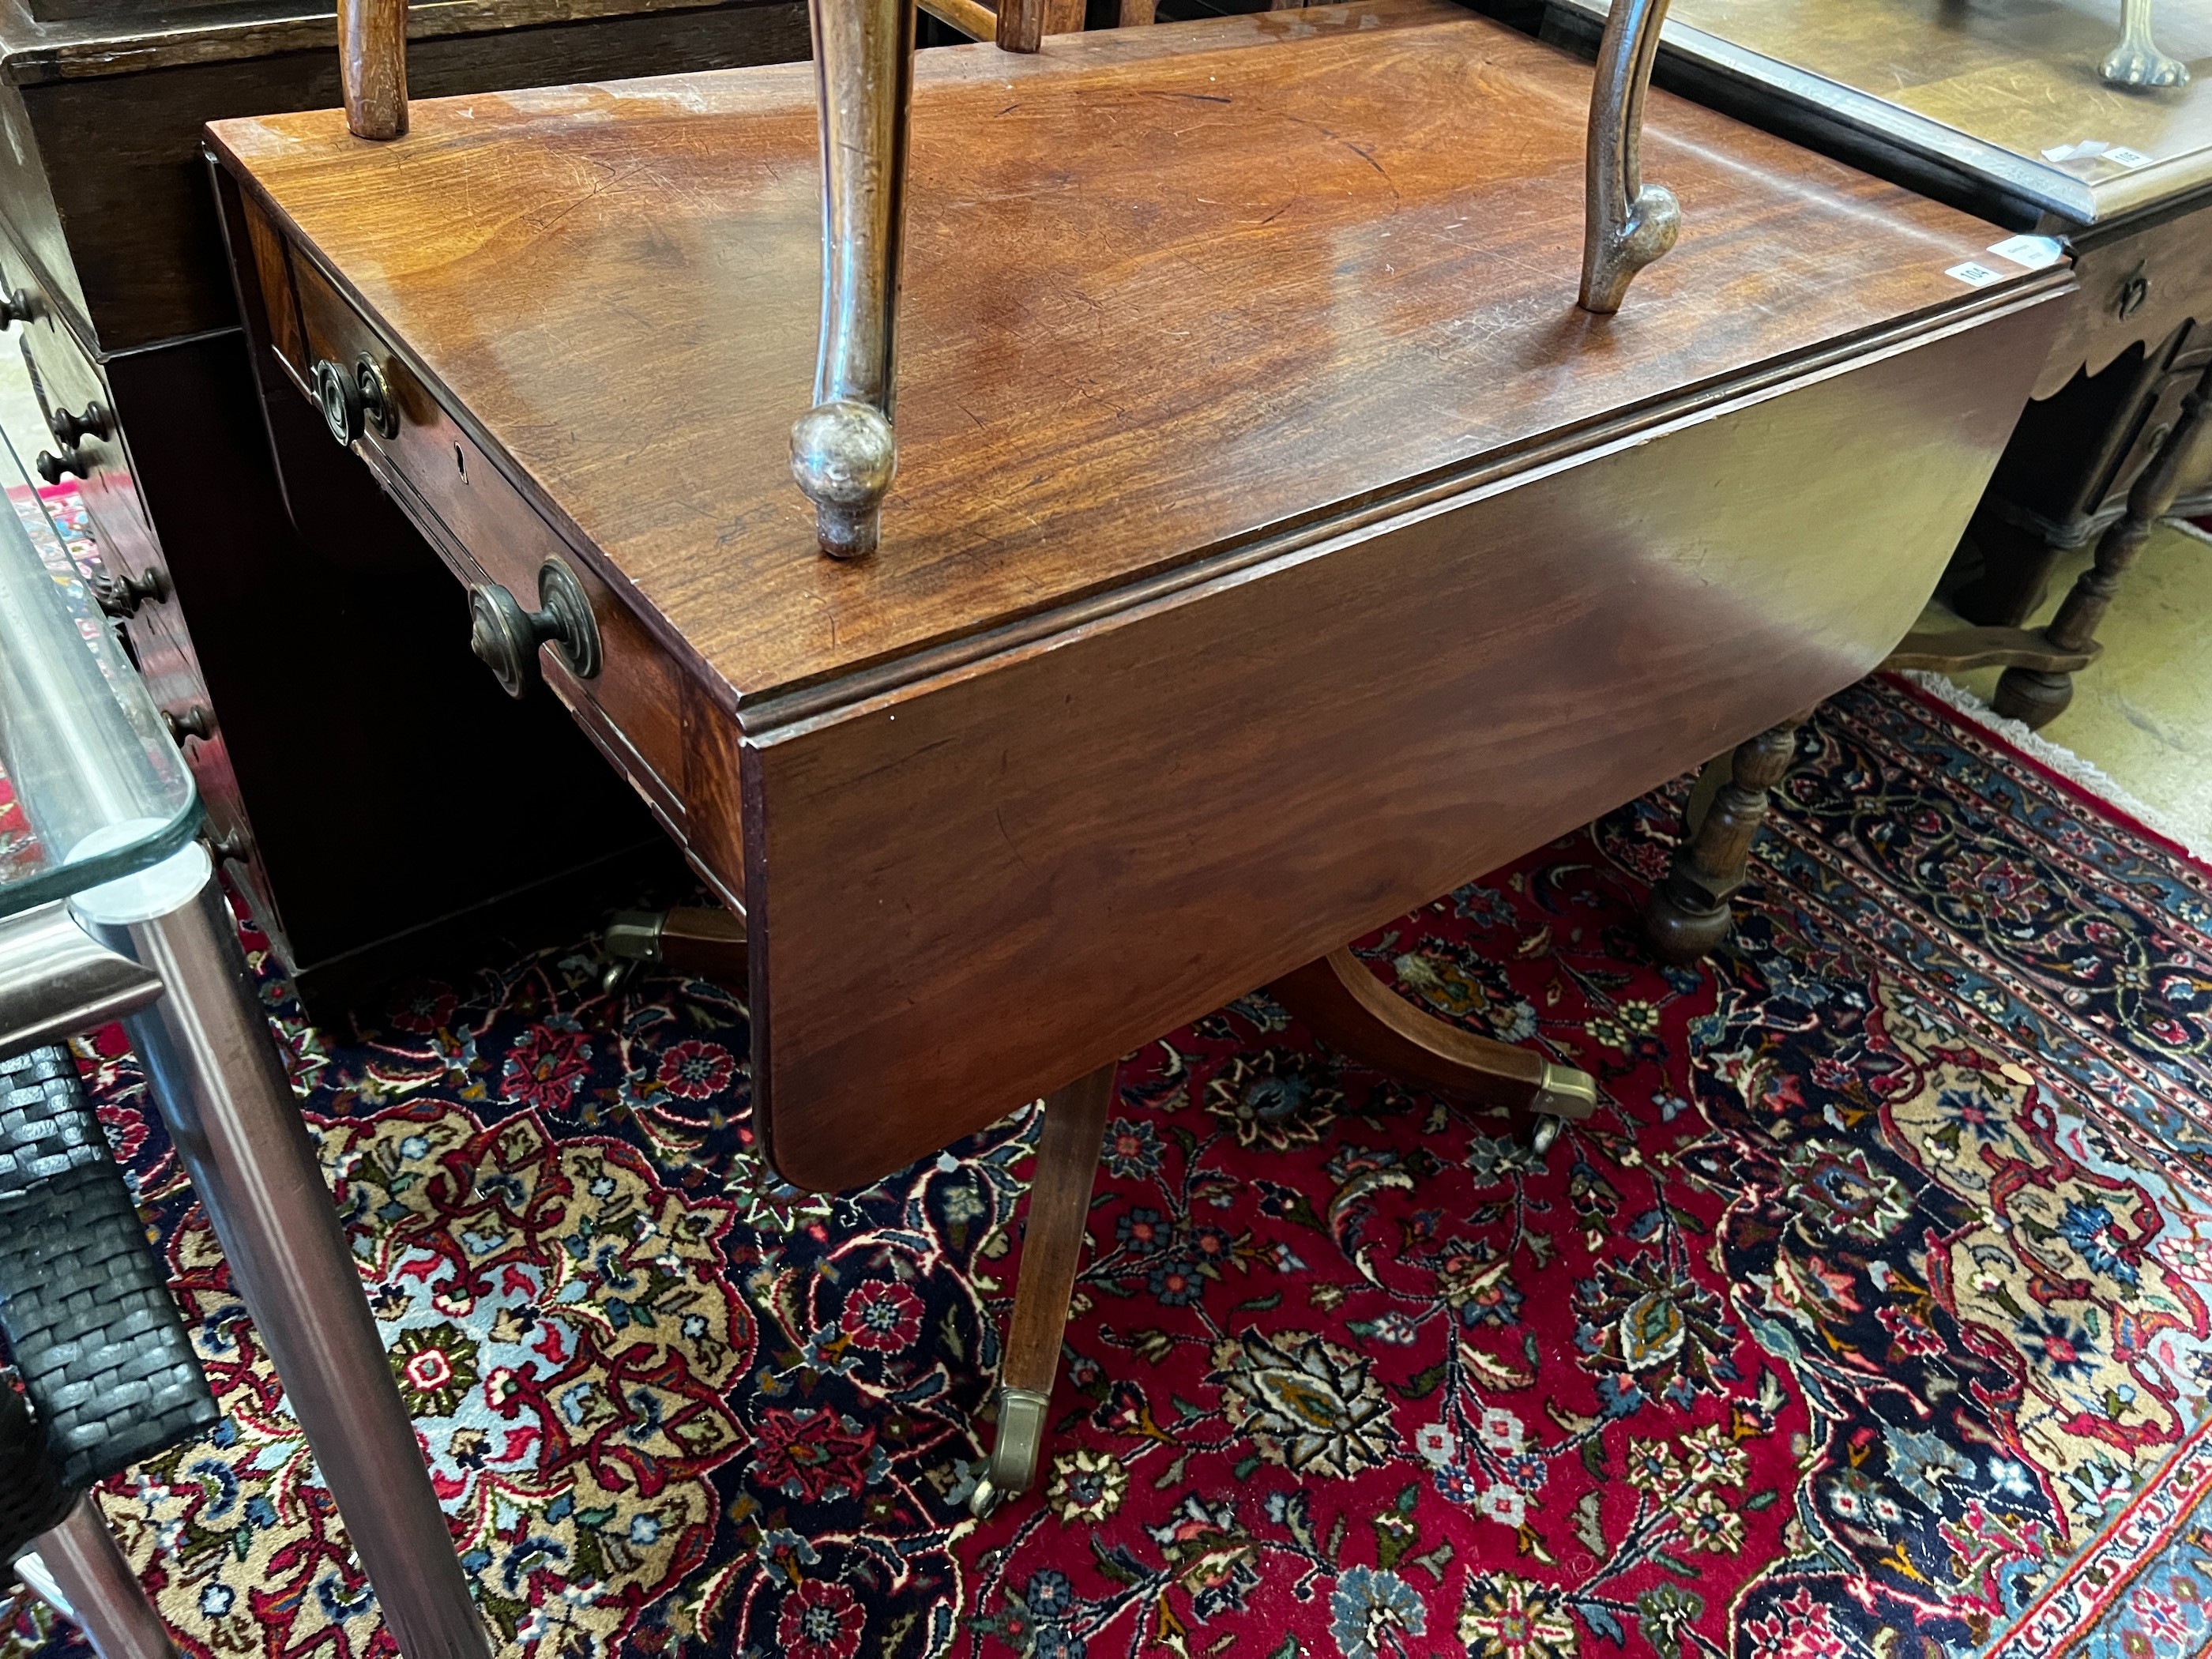 A Regency mahogany Pembroke breakfast table, width 91cm, depth 56cm, height 71cm - Image 4 of 4